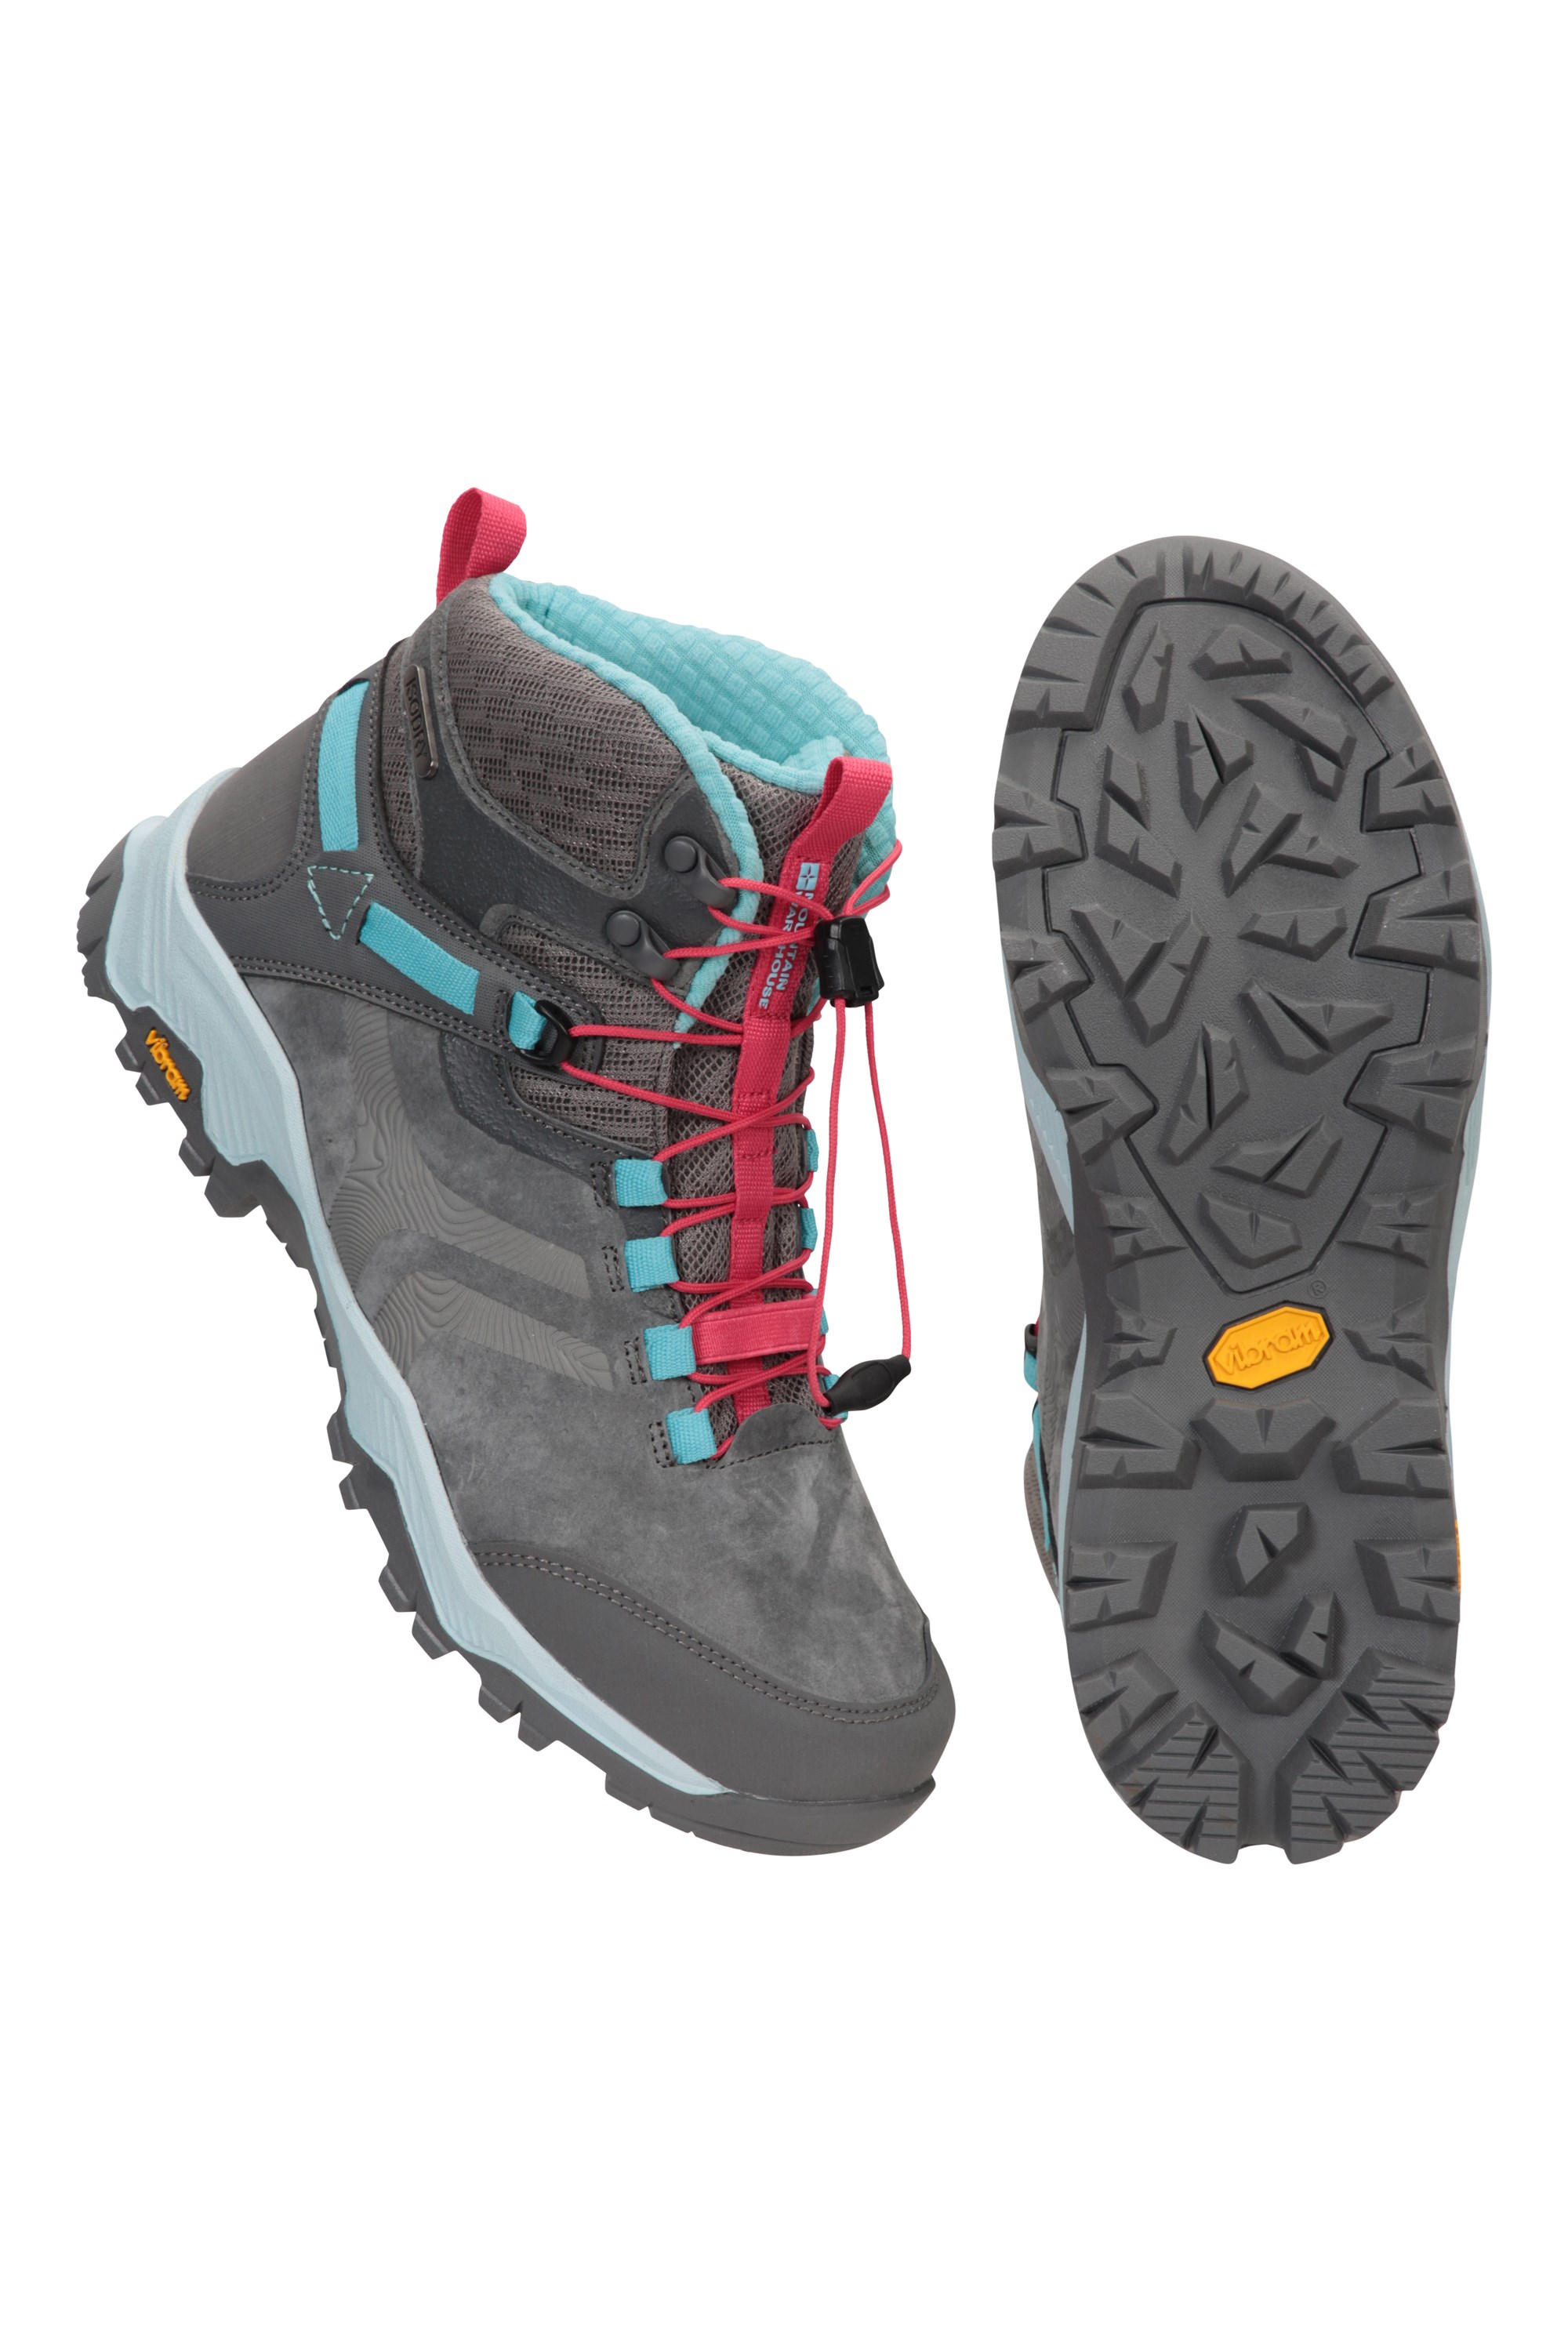 Oysho Shoes Athletic Hiking Training Womens Size 42 (11) Vibram Soles NEW